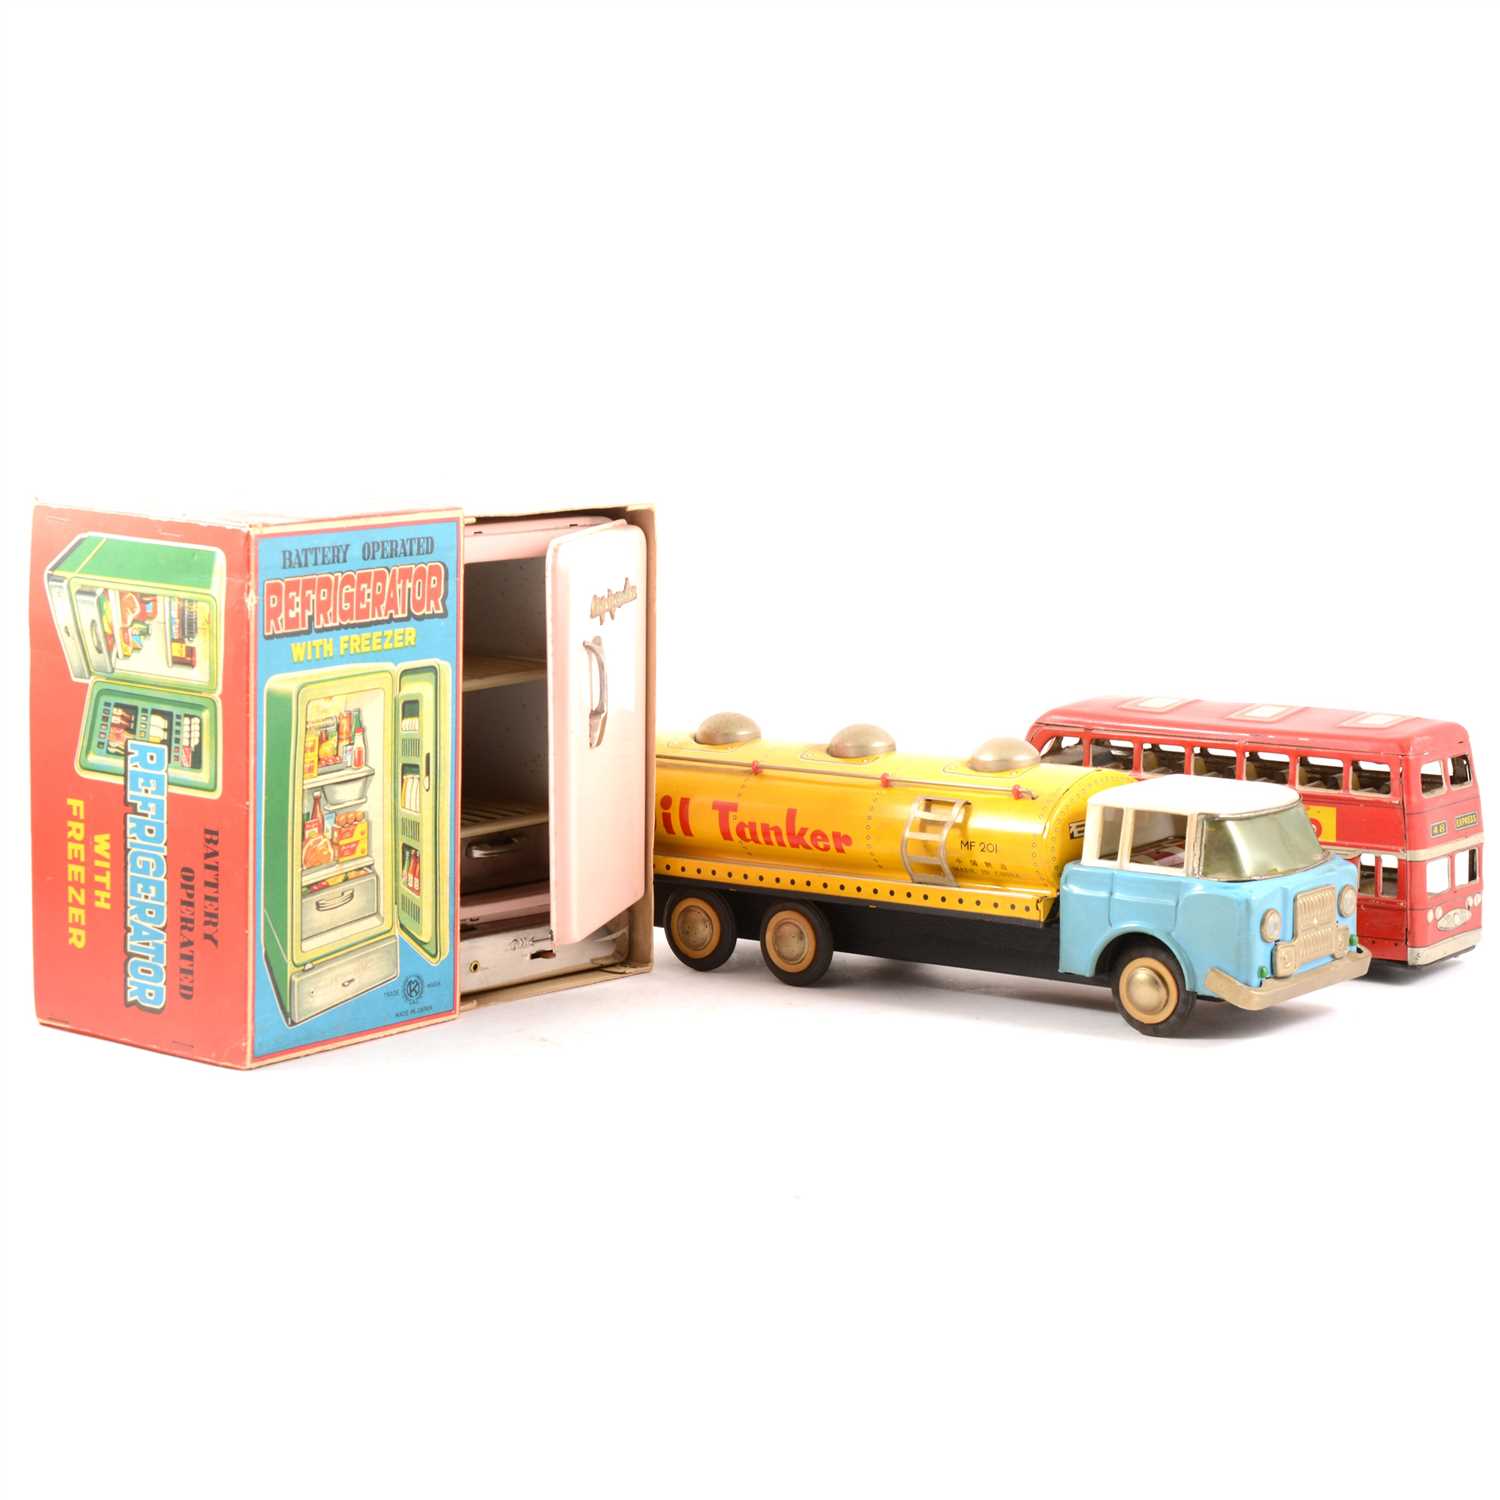 Lot 73 - Tin-plate toys; large trains, buses, fridge, furniture etc.